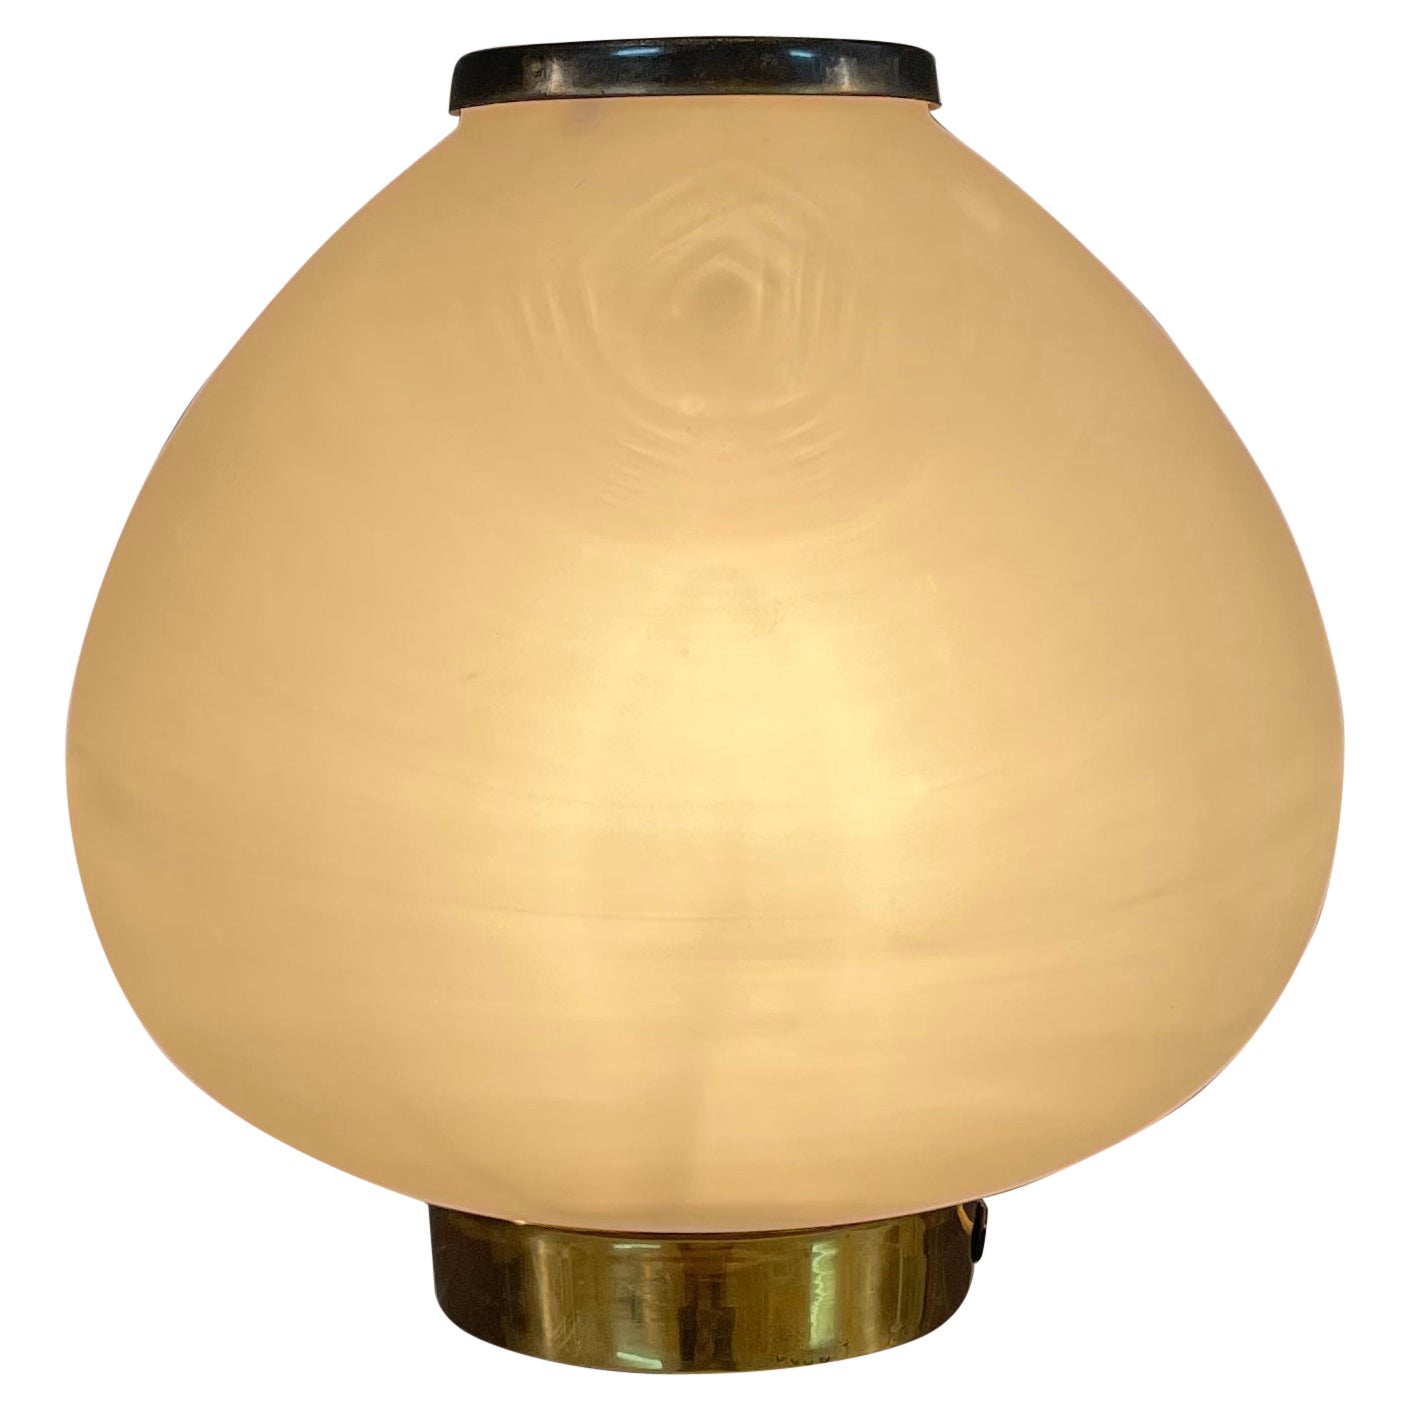 Diese Lampe ist sehr selten und wichtig.
Es hat seine ursprüngliche Label unter dem Sockel 